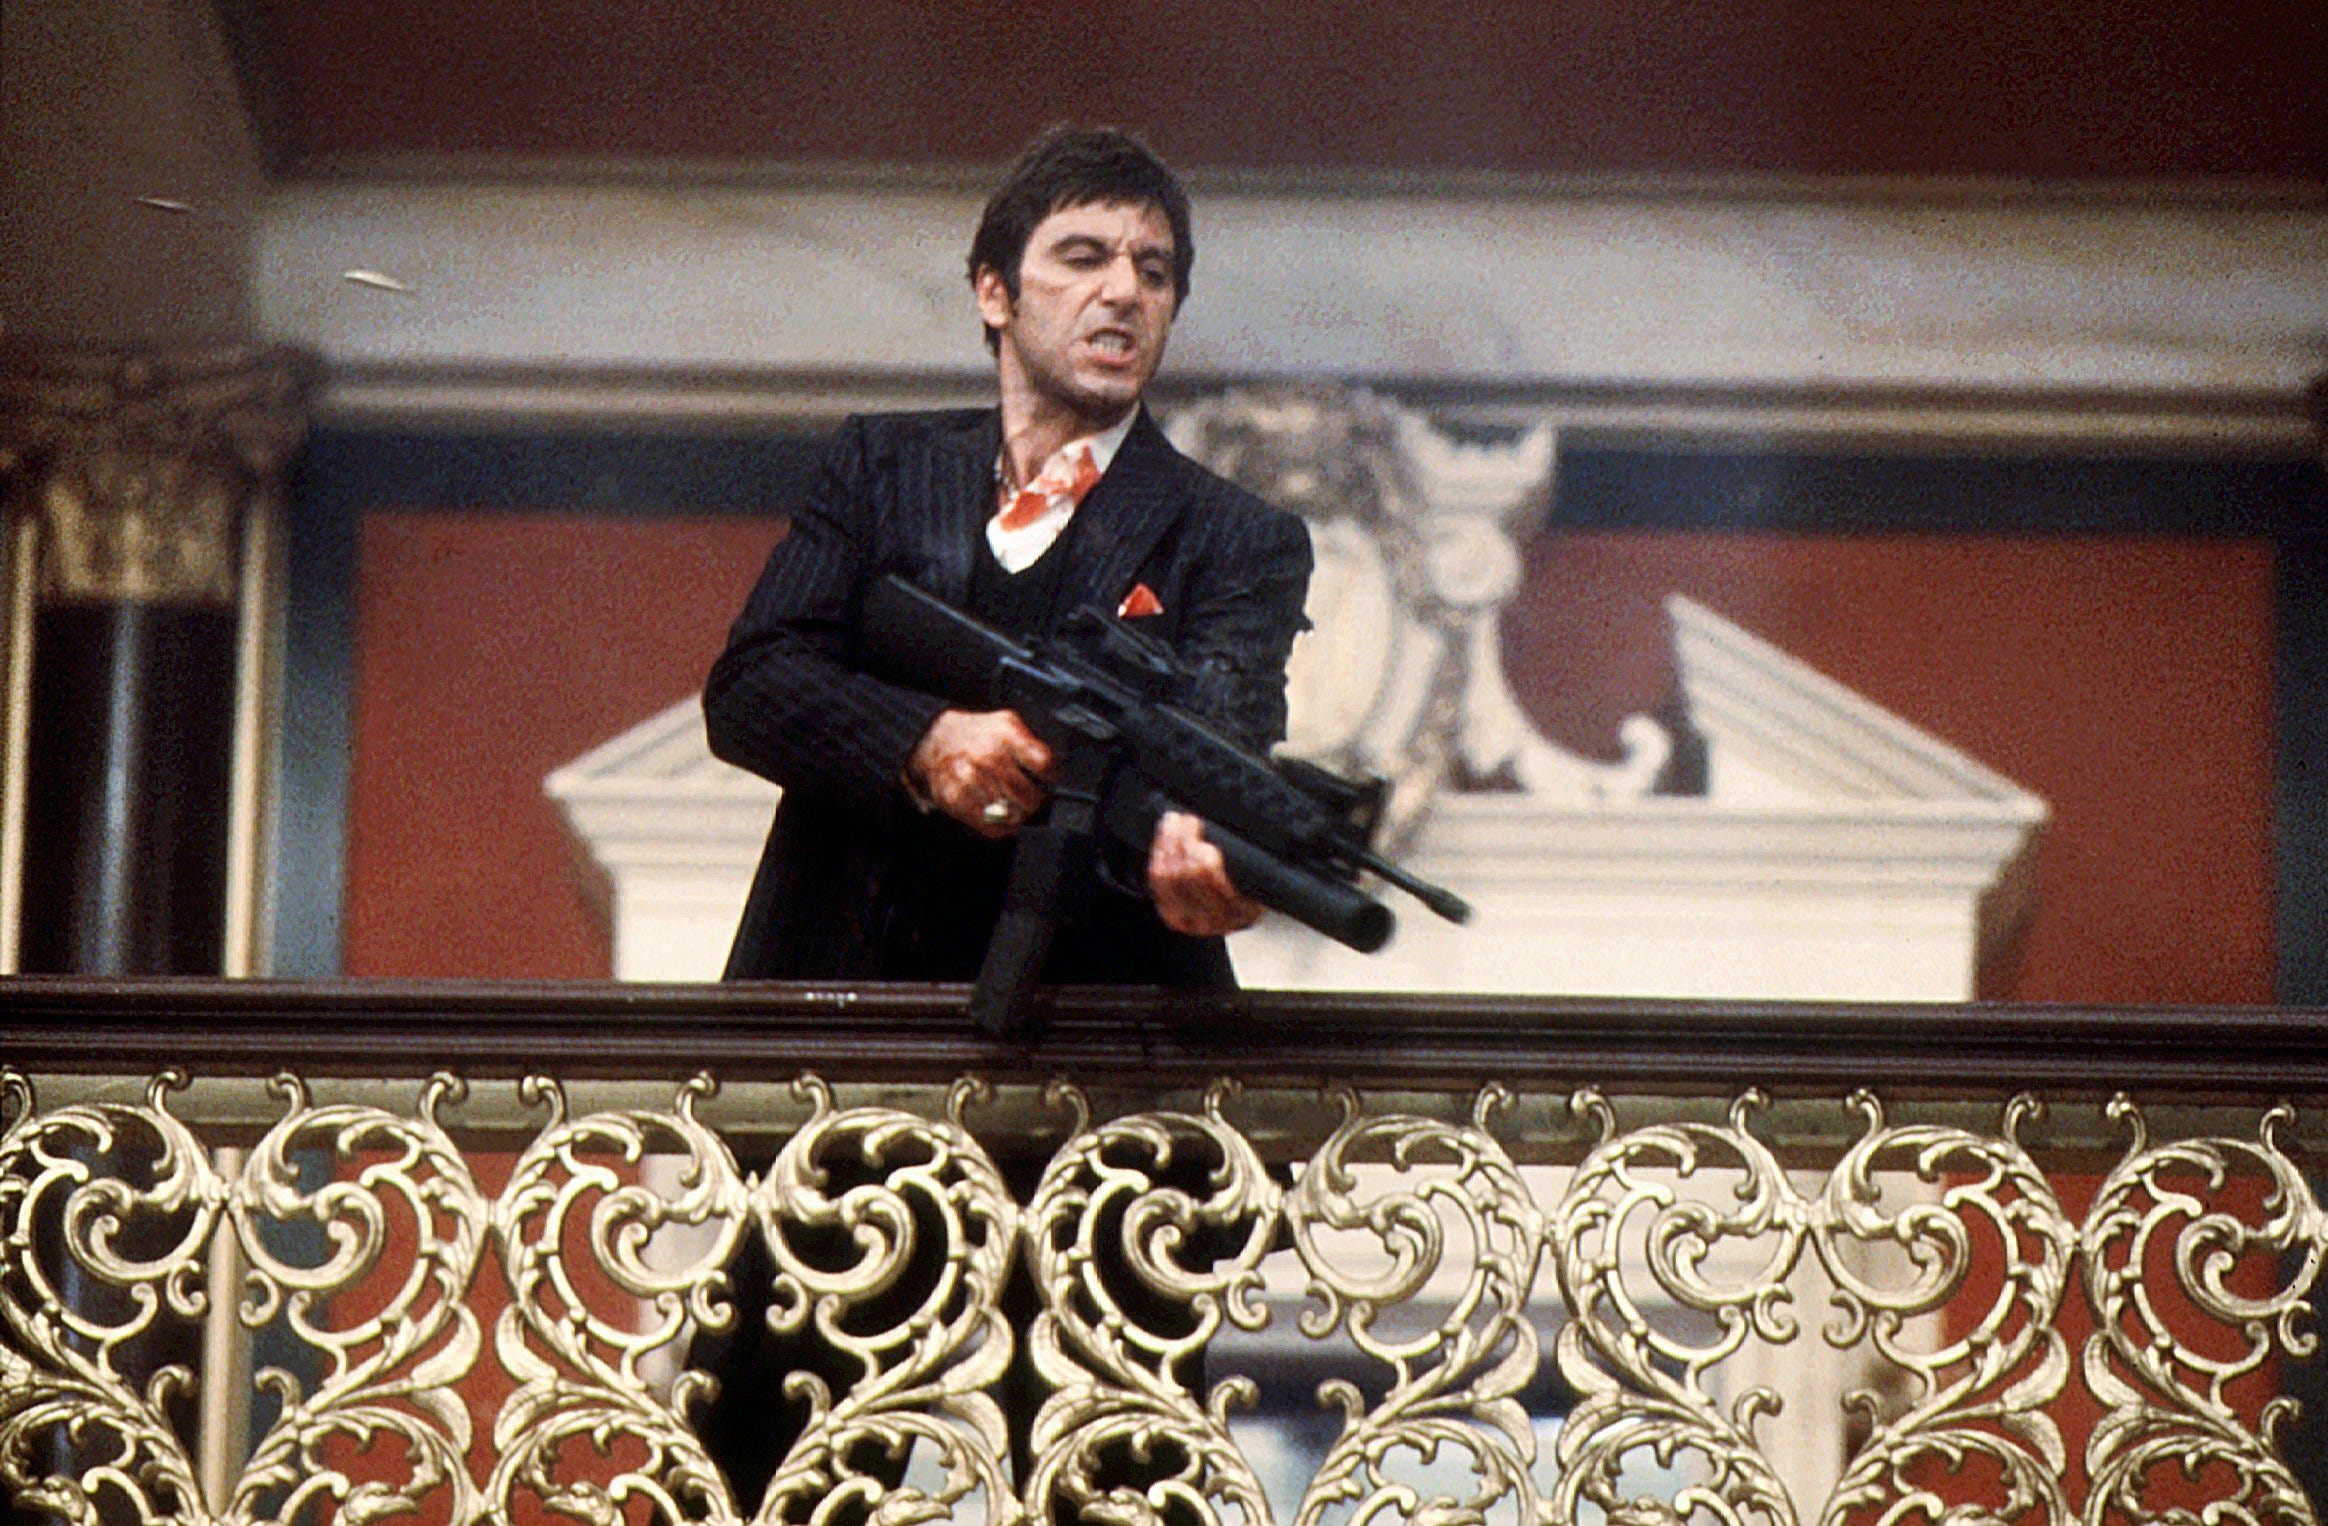 Geno Silva, the 'Scarface' assassin who killed Tony Montana, dies...